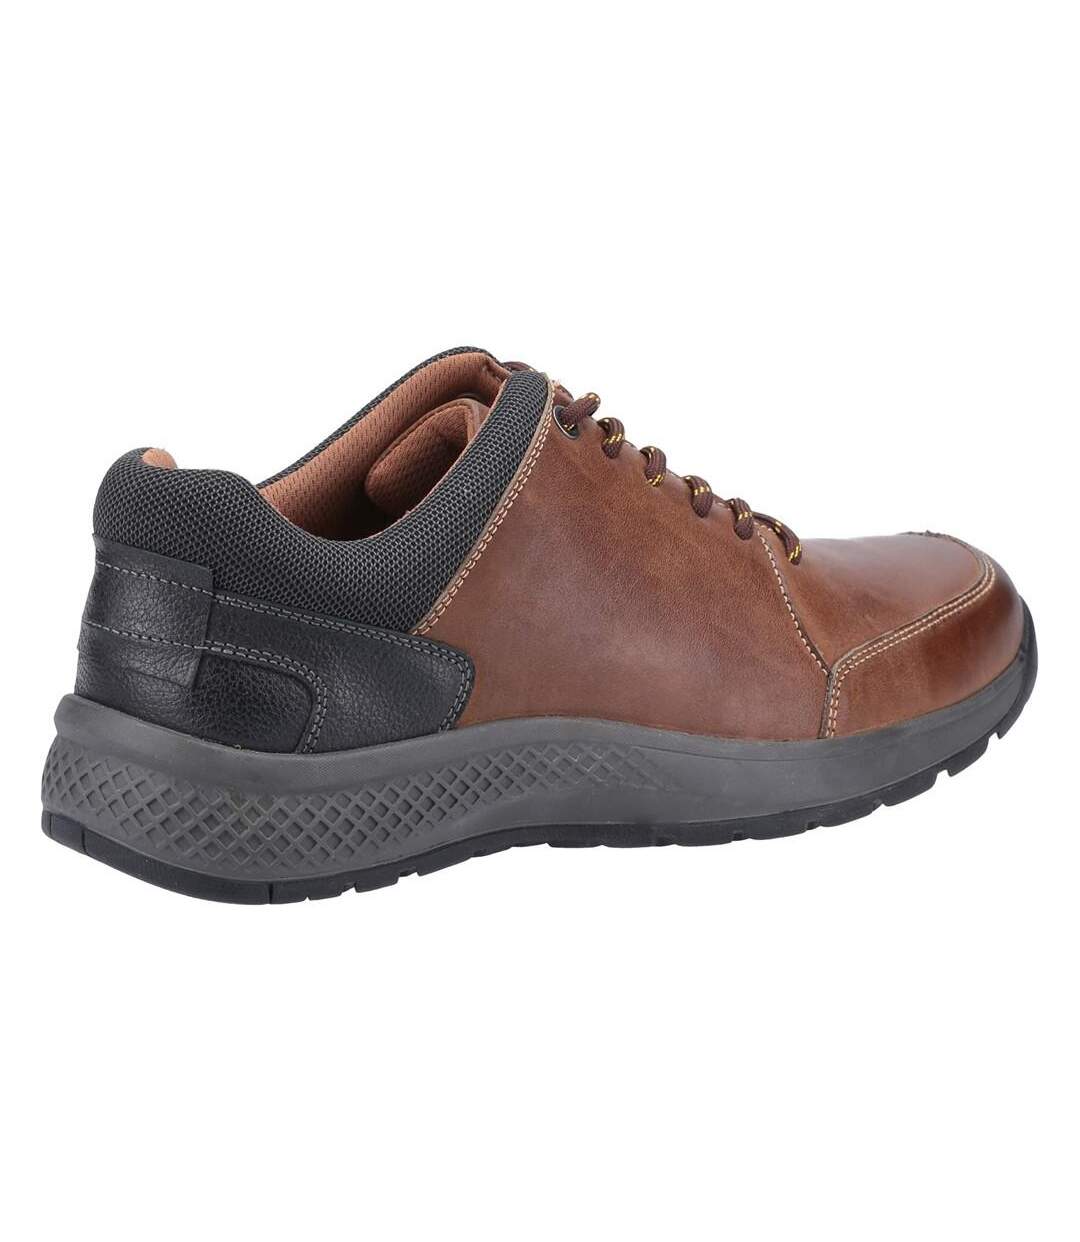 Cotswold - Chaussures décontractées ROLLRIGHT - Homme (Marron) - UTFS7425